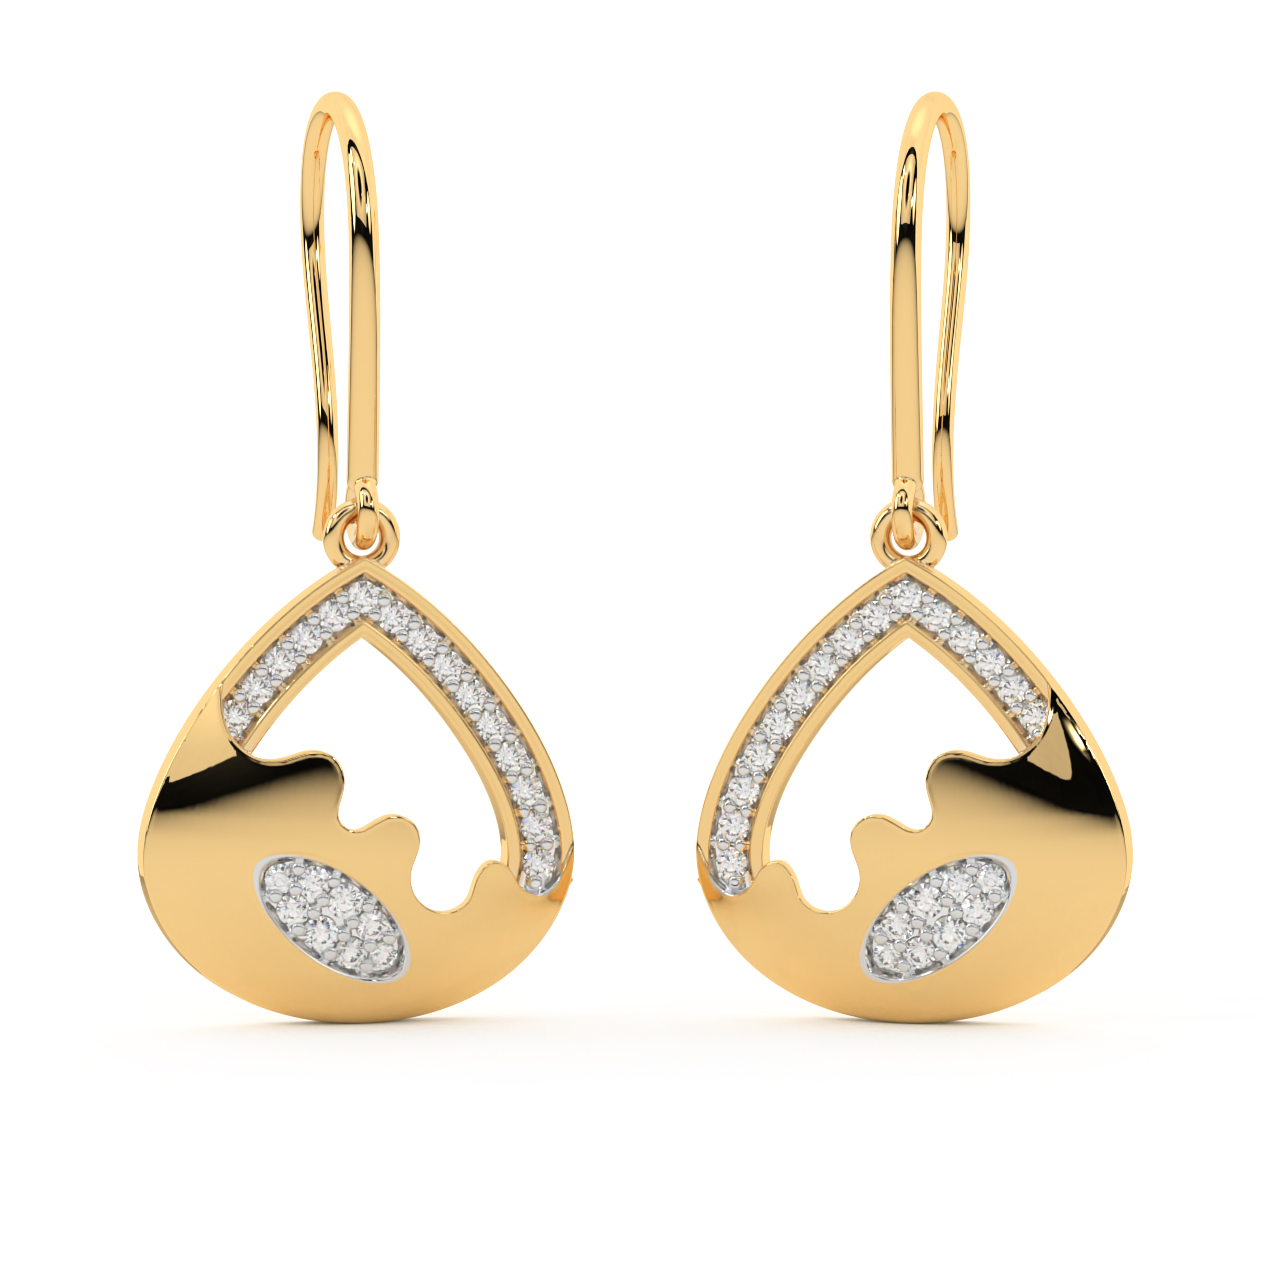 The Modern Revival Diamond Earrings